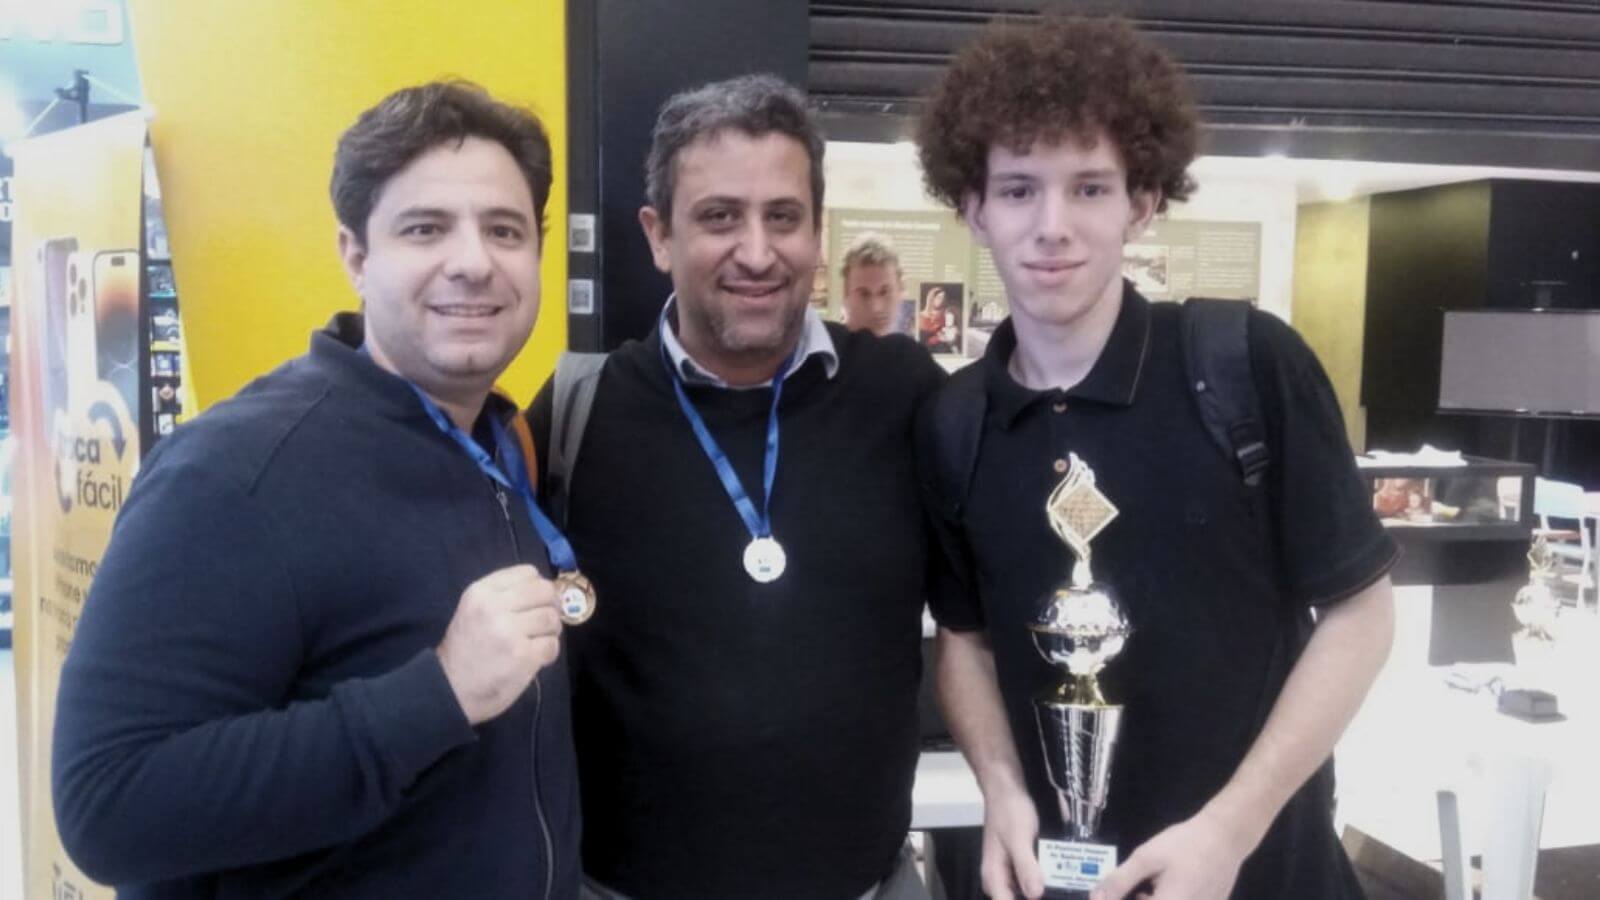 Três homens do Time Jundiaí de Xadrez posando com medalhas e um troféu, celebrando uma conquista em um ambiente de competição.